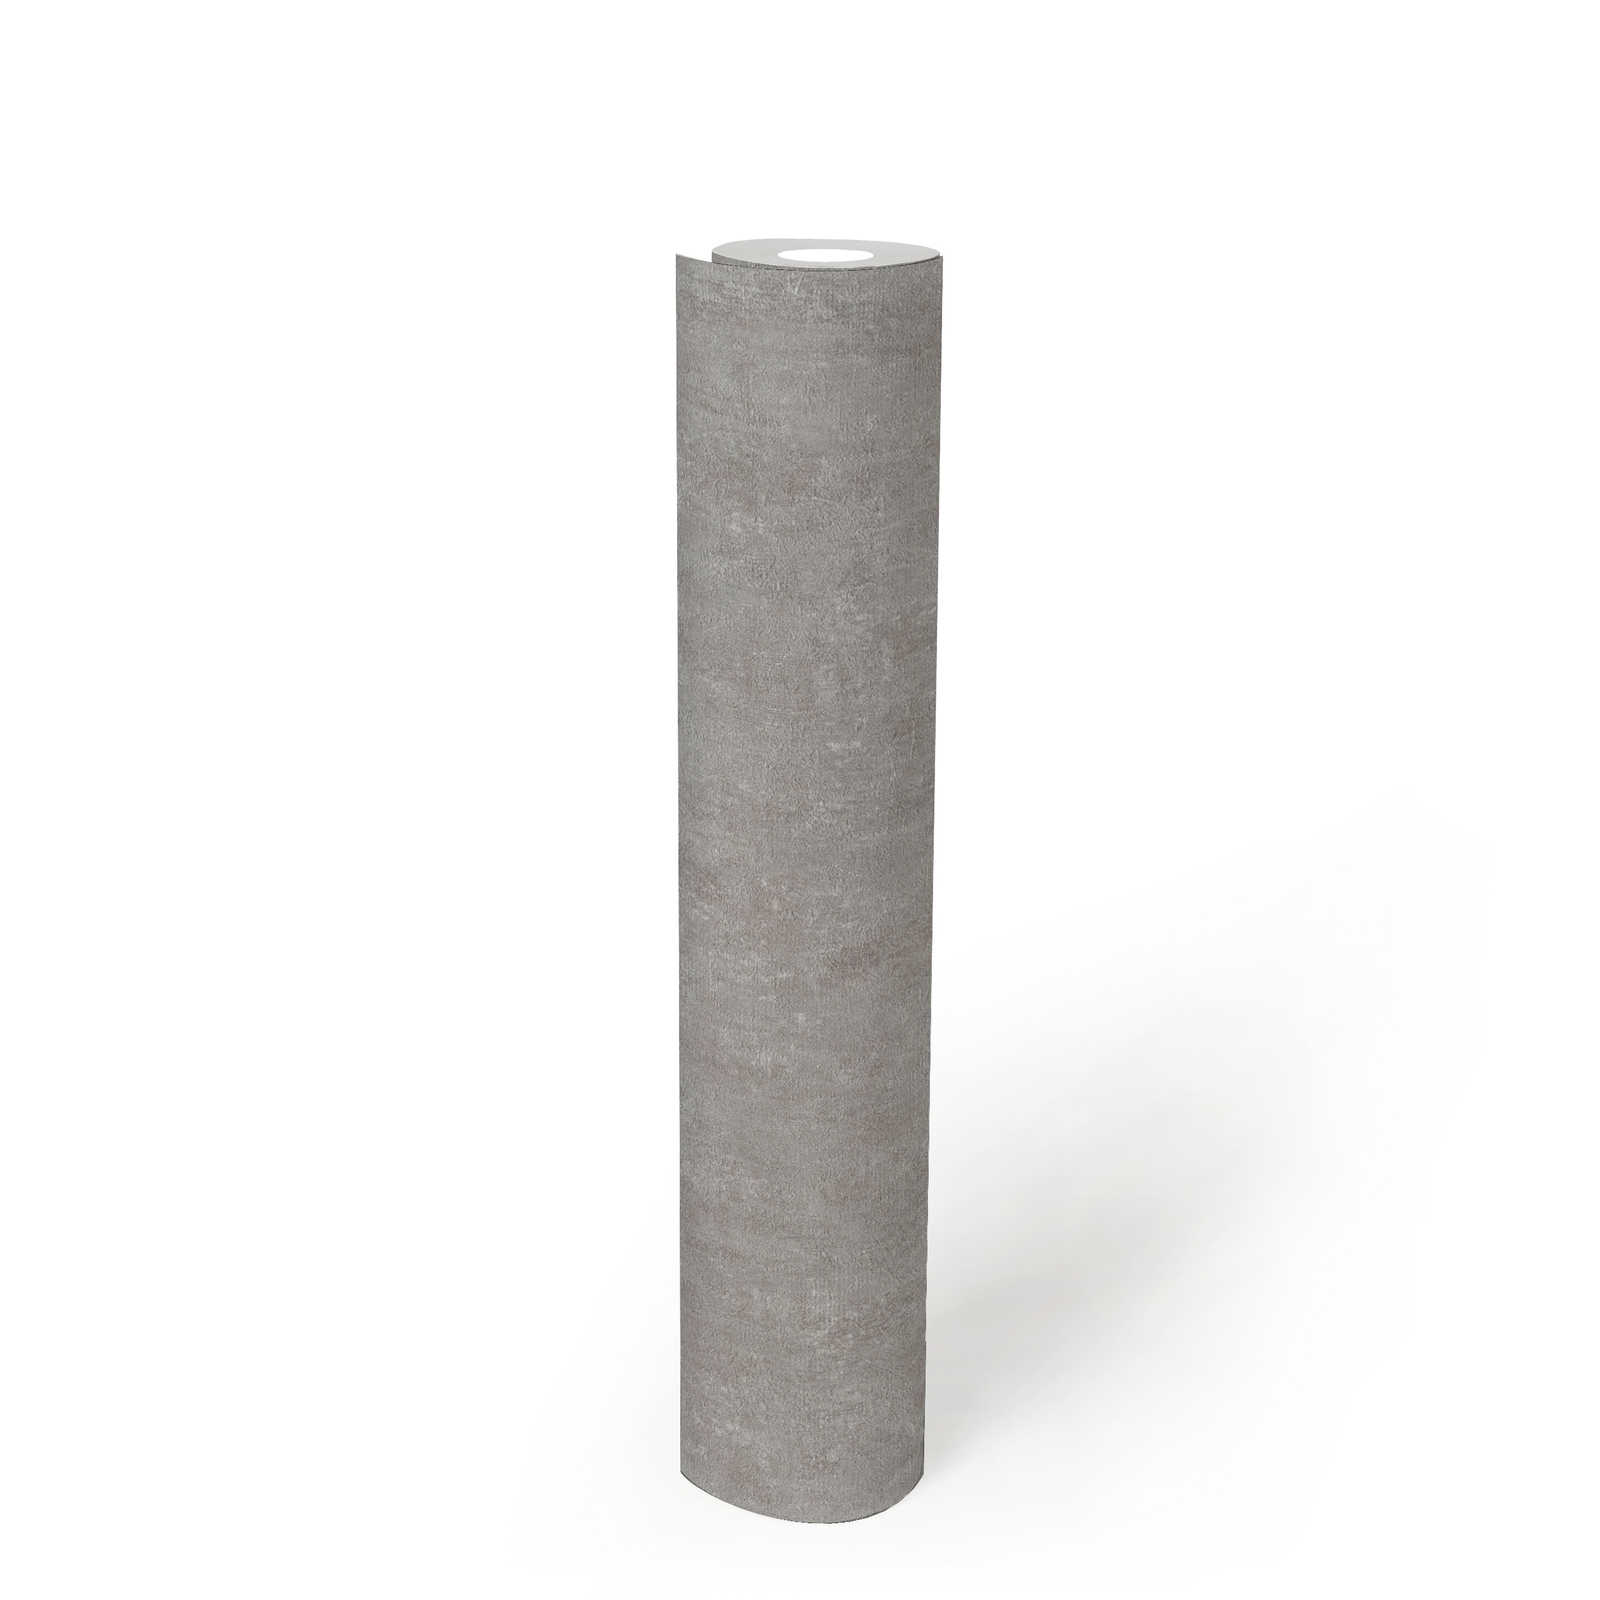             Grijs behangpapier met gipslook design en textuureffect - grijs
        